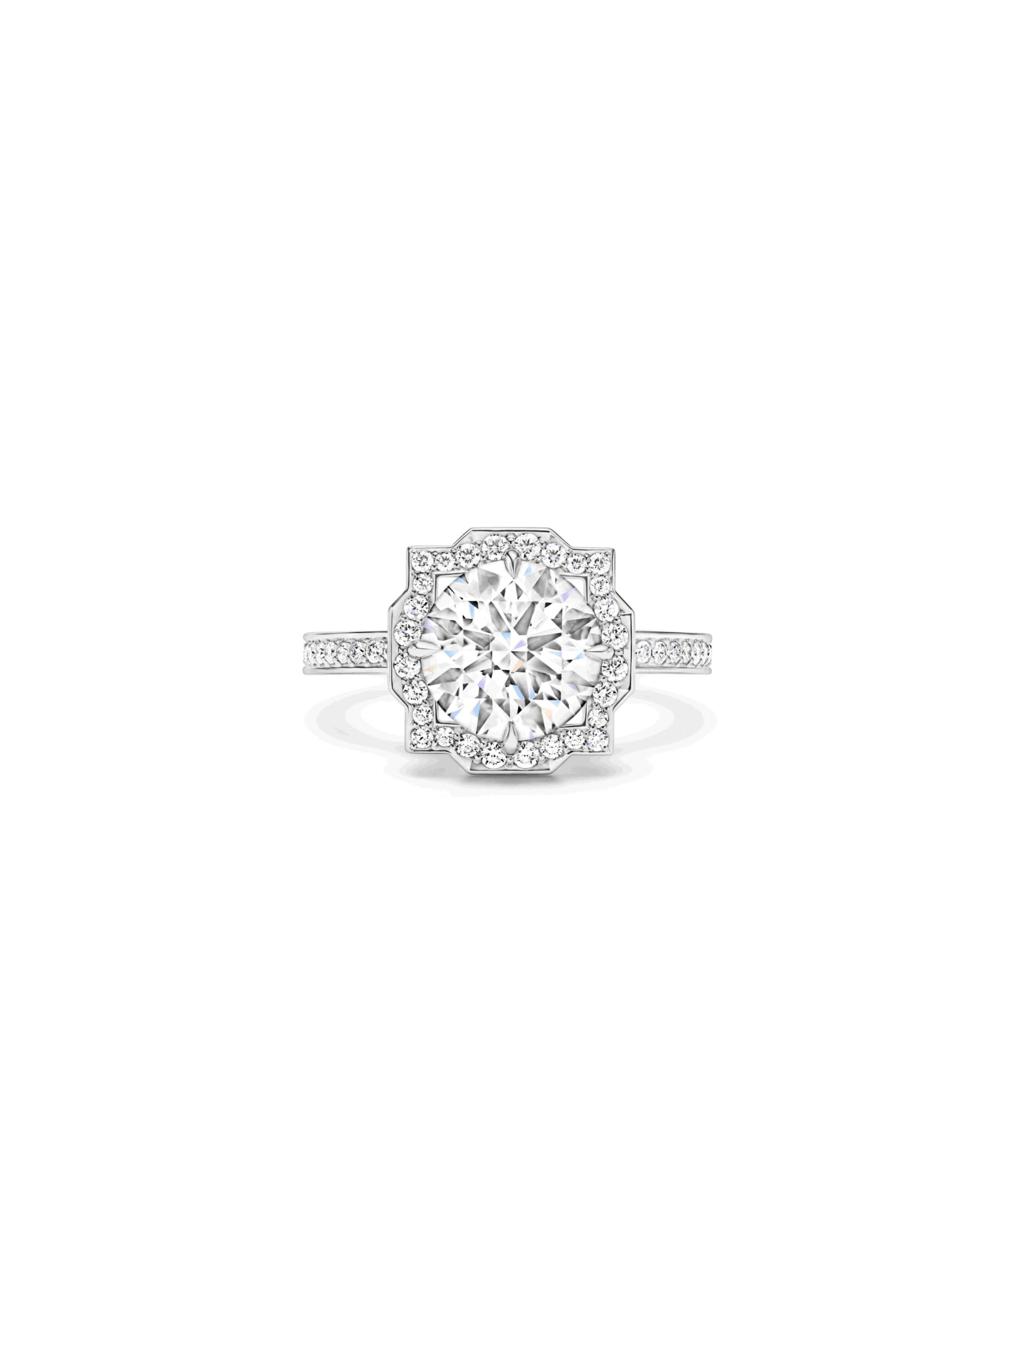 海瑞溫斯頓 Belle系列鑽石戒指，幾何美感的鑽石邊框，十分古典優雅。(Harry Wisnton提供）